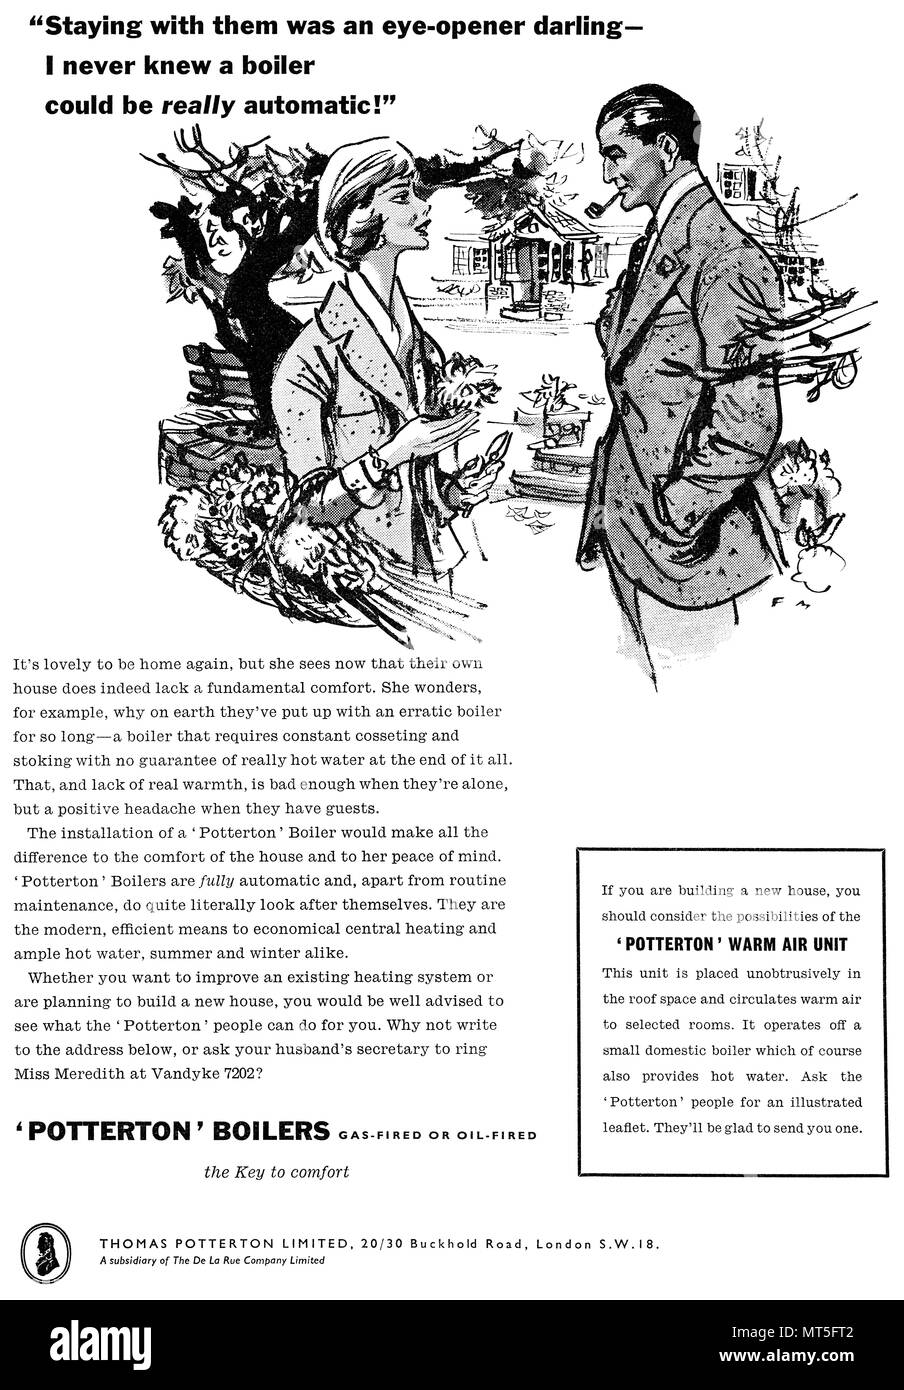 1959 britischen Werbung für potterton Gas - Öl befeuerte Heizkessel, illustriert von Francis Marshall. Stockfoto